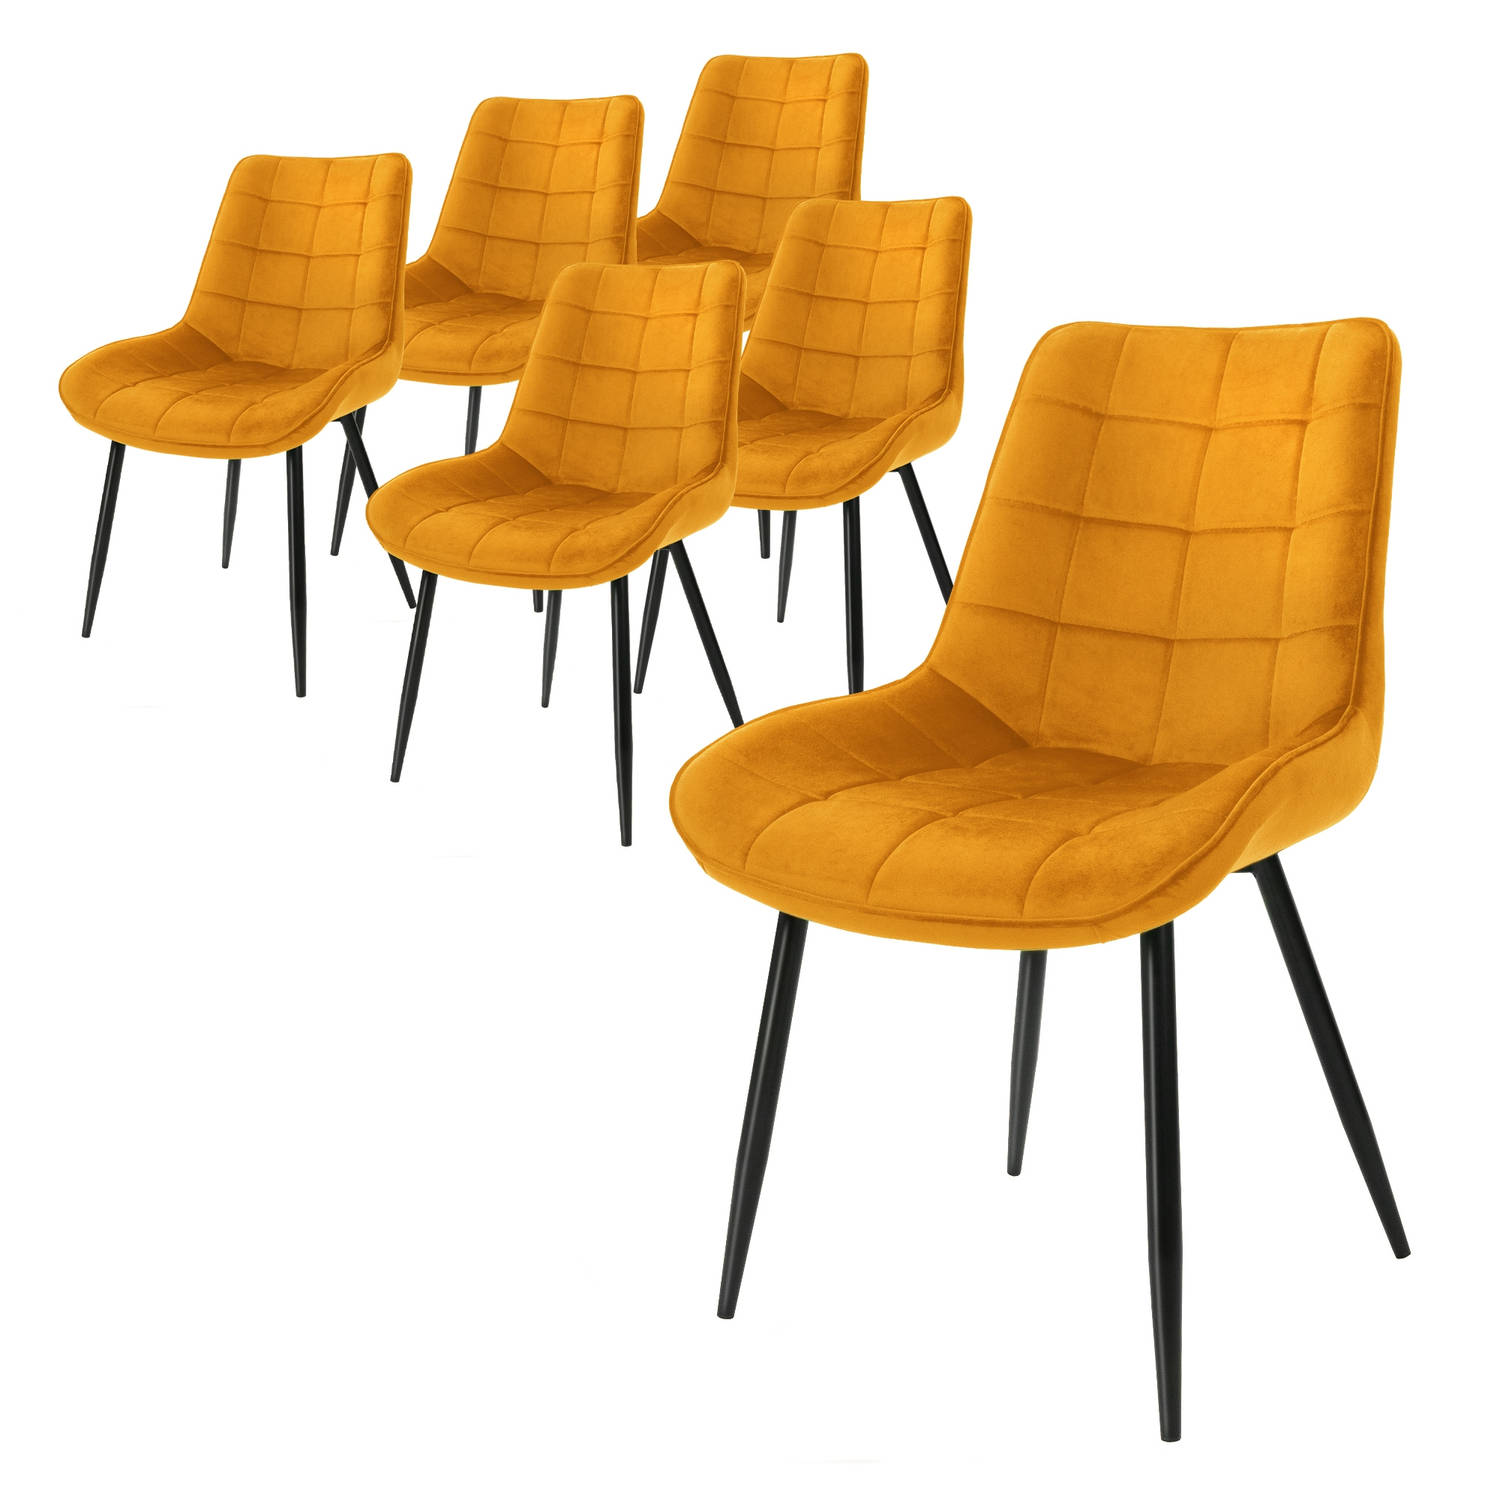 ML-Design Set van 6 eetkamerstoelen met rugleuning, oker, keukenstoel met fluwelen bekleding, gestoffeerde stoel met metalen poten, ergonomische stoel voor eettafel, woonkamerstoel